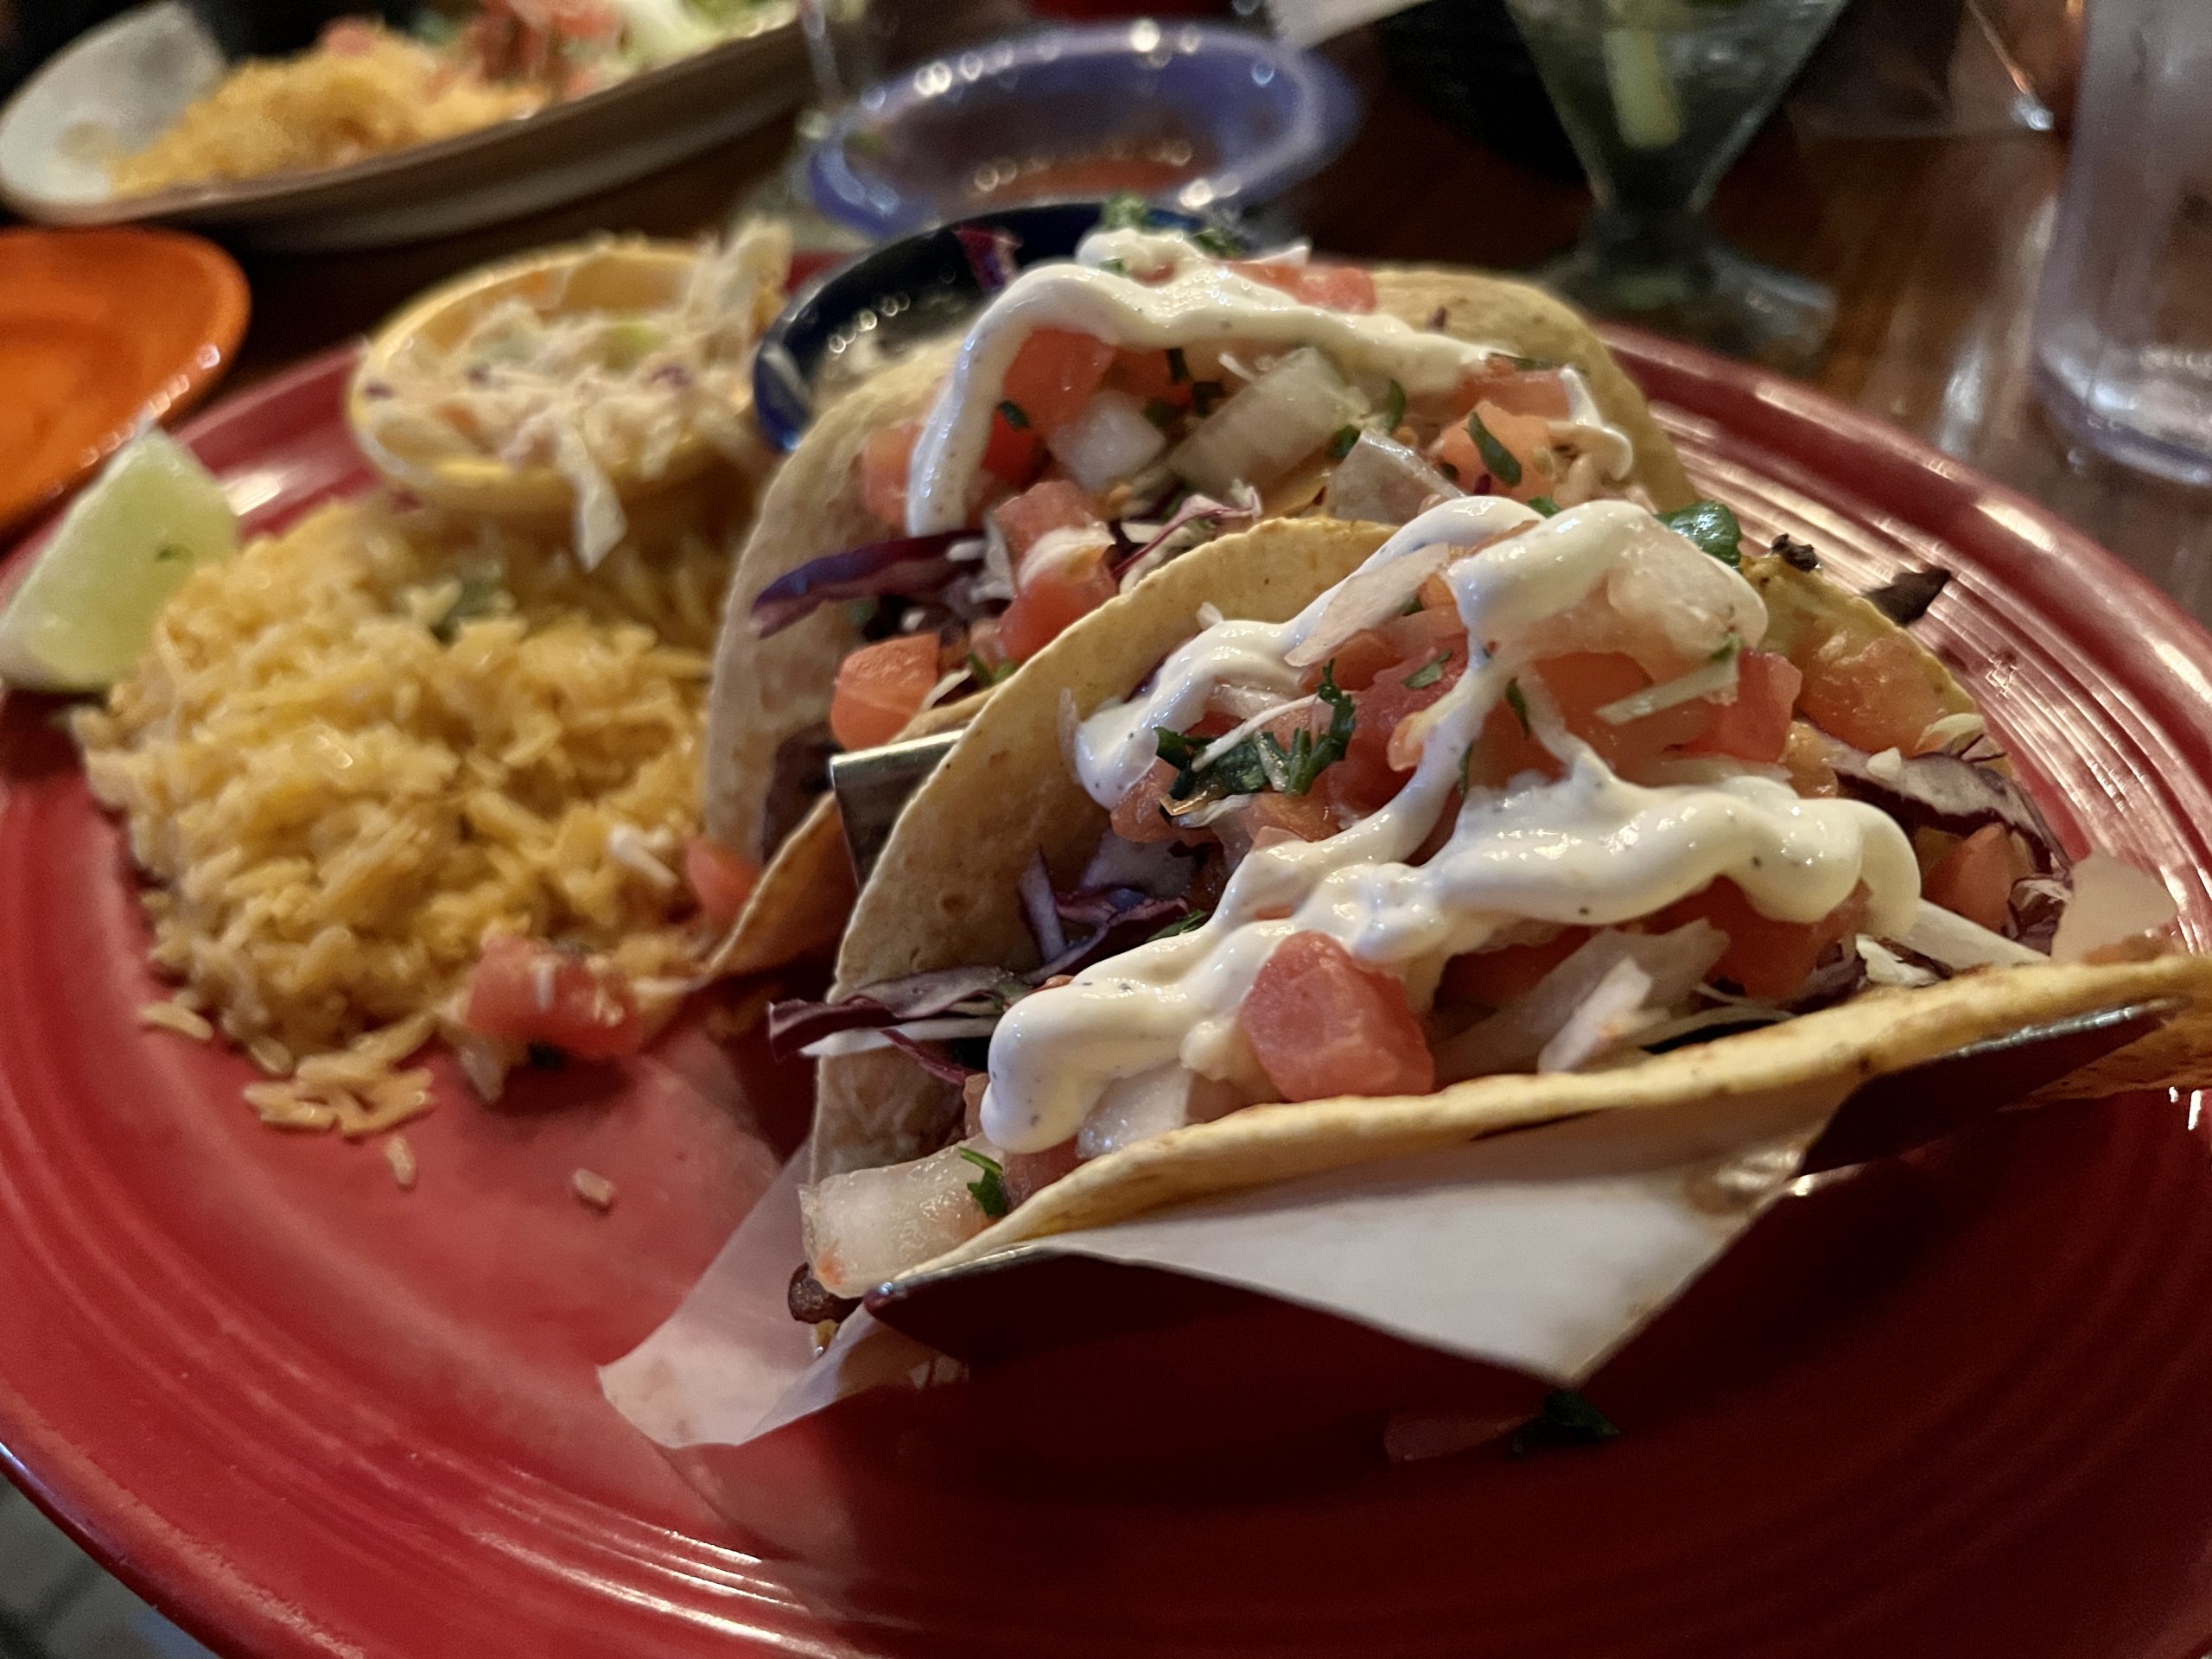 Fish tacos at Border Cafe